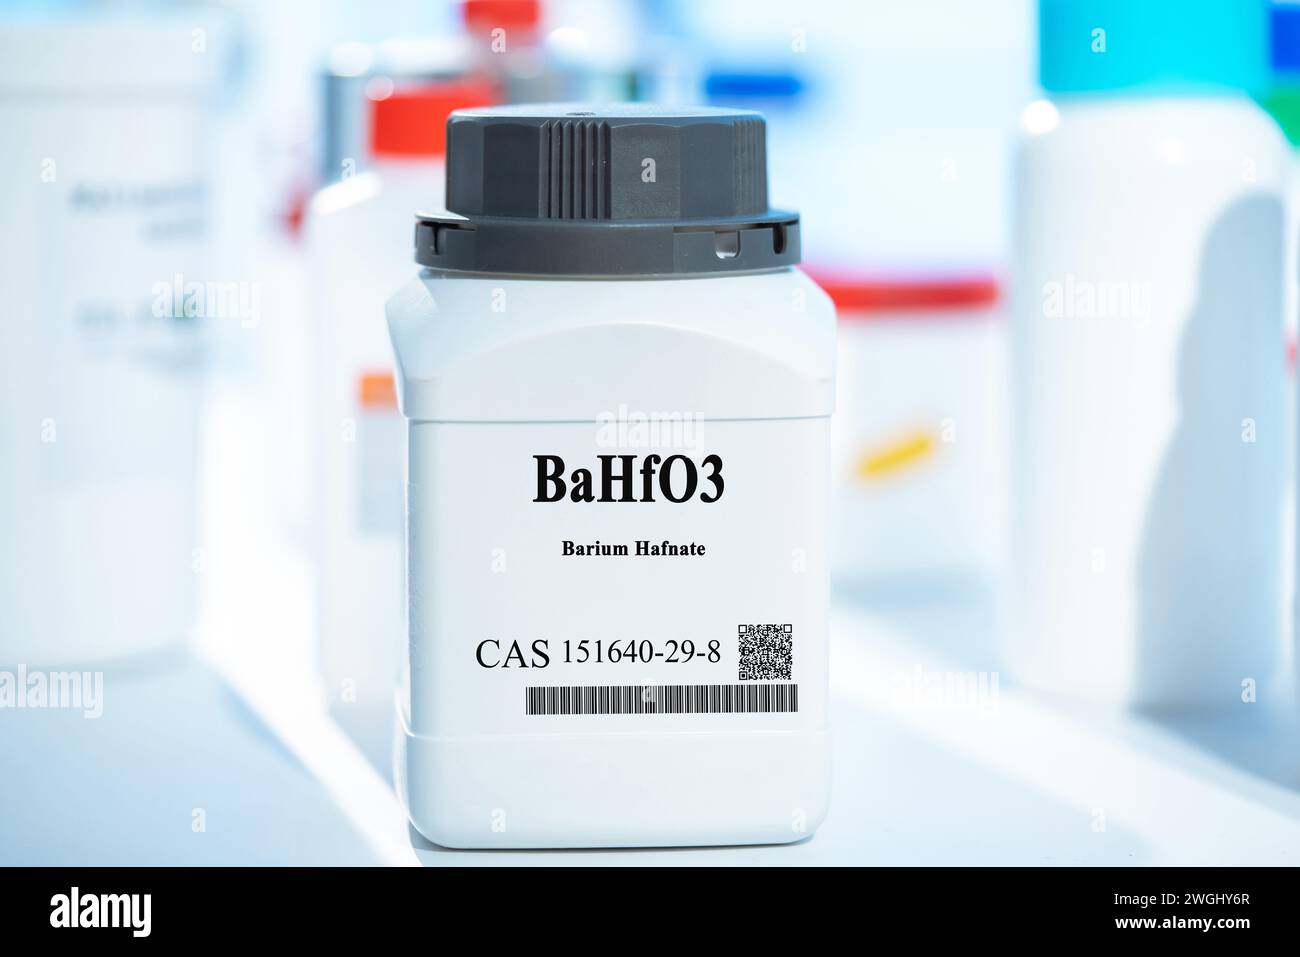 BaHfO3 barium hafnate CAS 151640-29-8 sustancia química en envases de laboratorio de plástico blanco Foto de stock